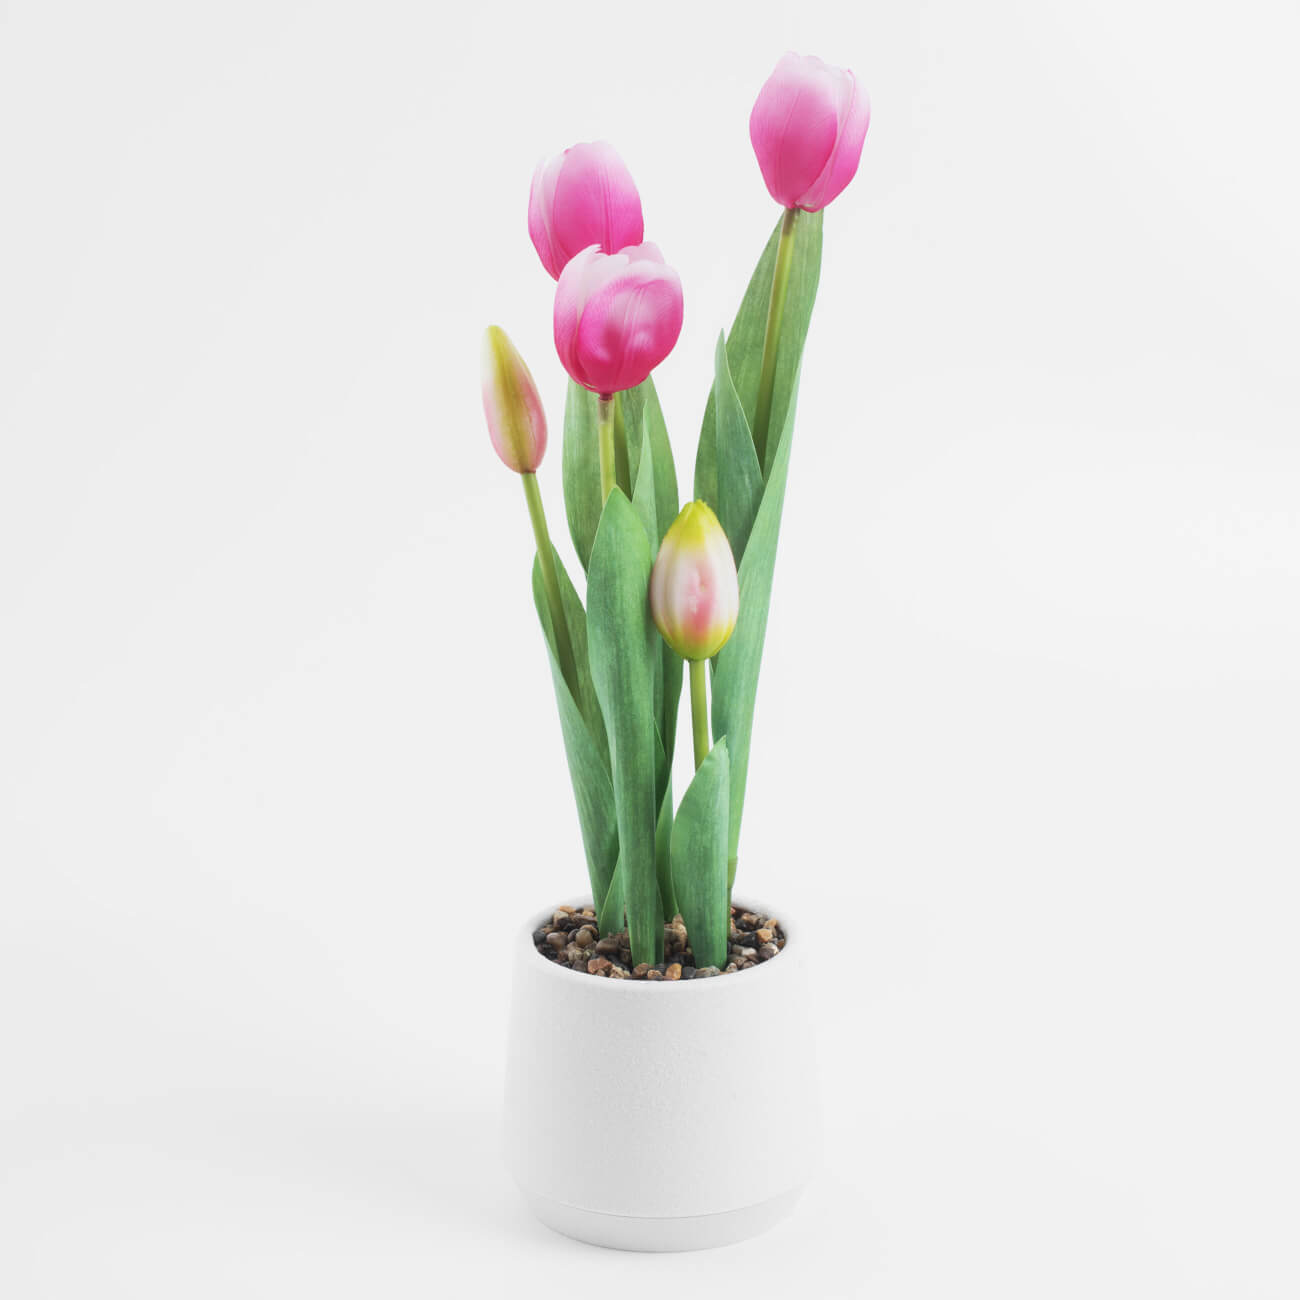 Растение искусственное, 36 см, в горшке, полиэстер/пластик, Розовые тюльпаны, Tulip garden растение искусственное аквариумное на платформе в виде коряги 40 см оранжевое